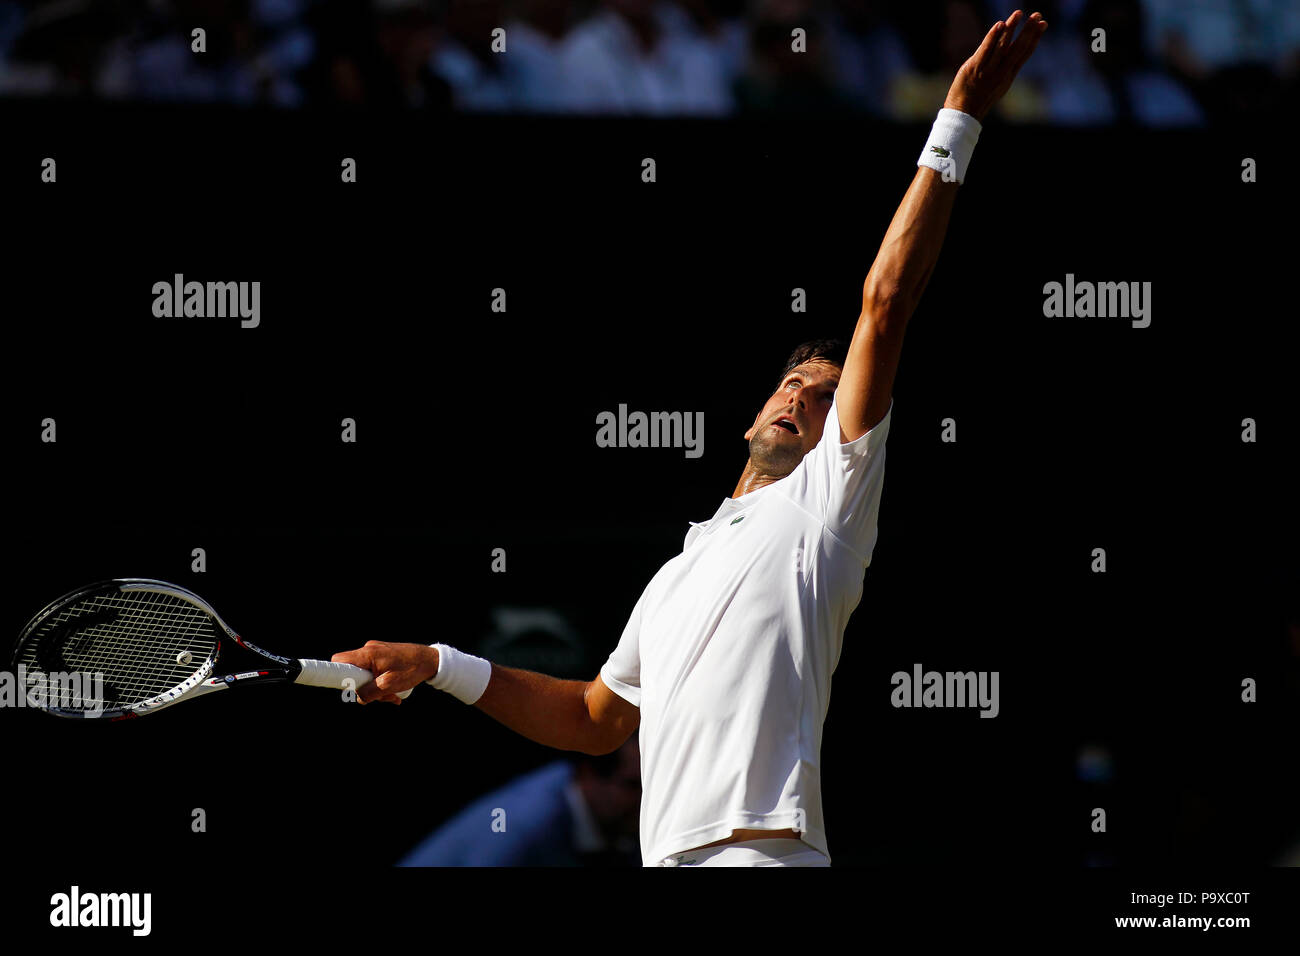 Londres, Angleterre - le 7 juillet 2018. Wimbledon Tennis : Novak Djokovic lors de son troisième match contre la Grande-Bretagne's Kyle Edmund sur le Court Central de Wimbledon aujourd'hui. Banque D'Images